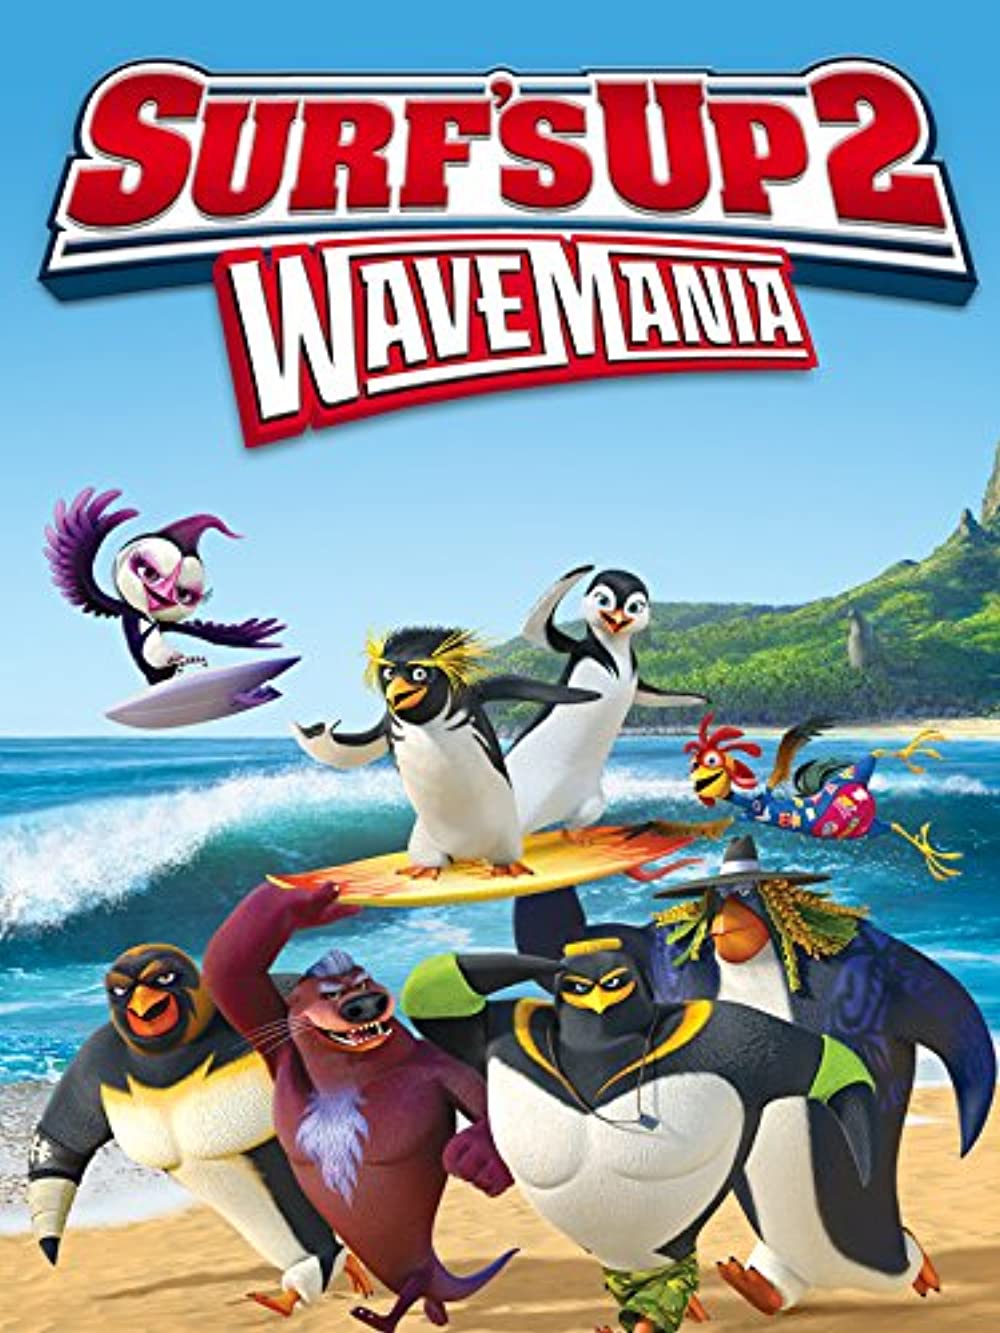 ดูหนังออนไลน์ SURF S UP 2 WAVEMANIA (2017) เซิร์ฟอัพ ไต่คลื่นยักษ์ซิ่งสะท้านโลก 2 หนังมาสเตอร์ หนังเต็มเรื่อง ดูหนังฟรีออนไลน์ ดูหนังออนไลน์ หนังออนไลน์ ดูหนังใหม่ หนังพากย์ไทย หนังซับไทย ดูฟรีHD